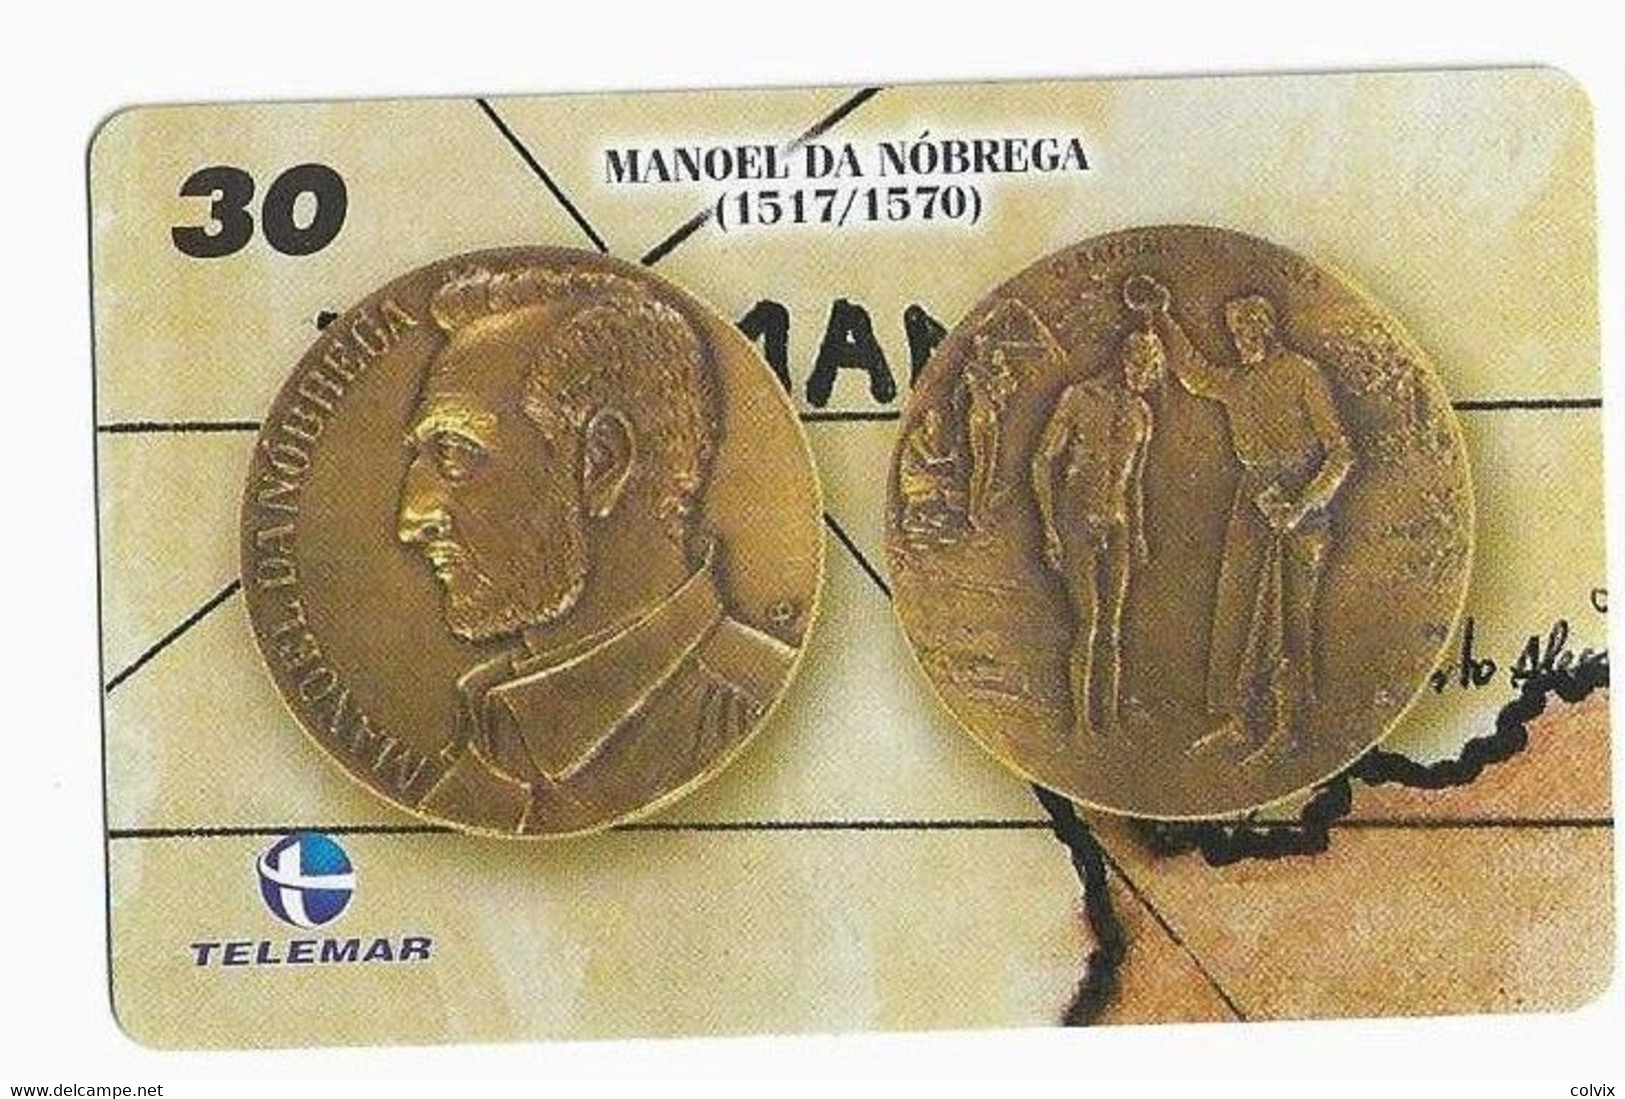 BRESIL TELECARTE MONNAIE MANOEL DA NOBREGA - Timbres & Monnaies